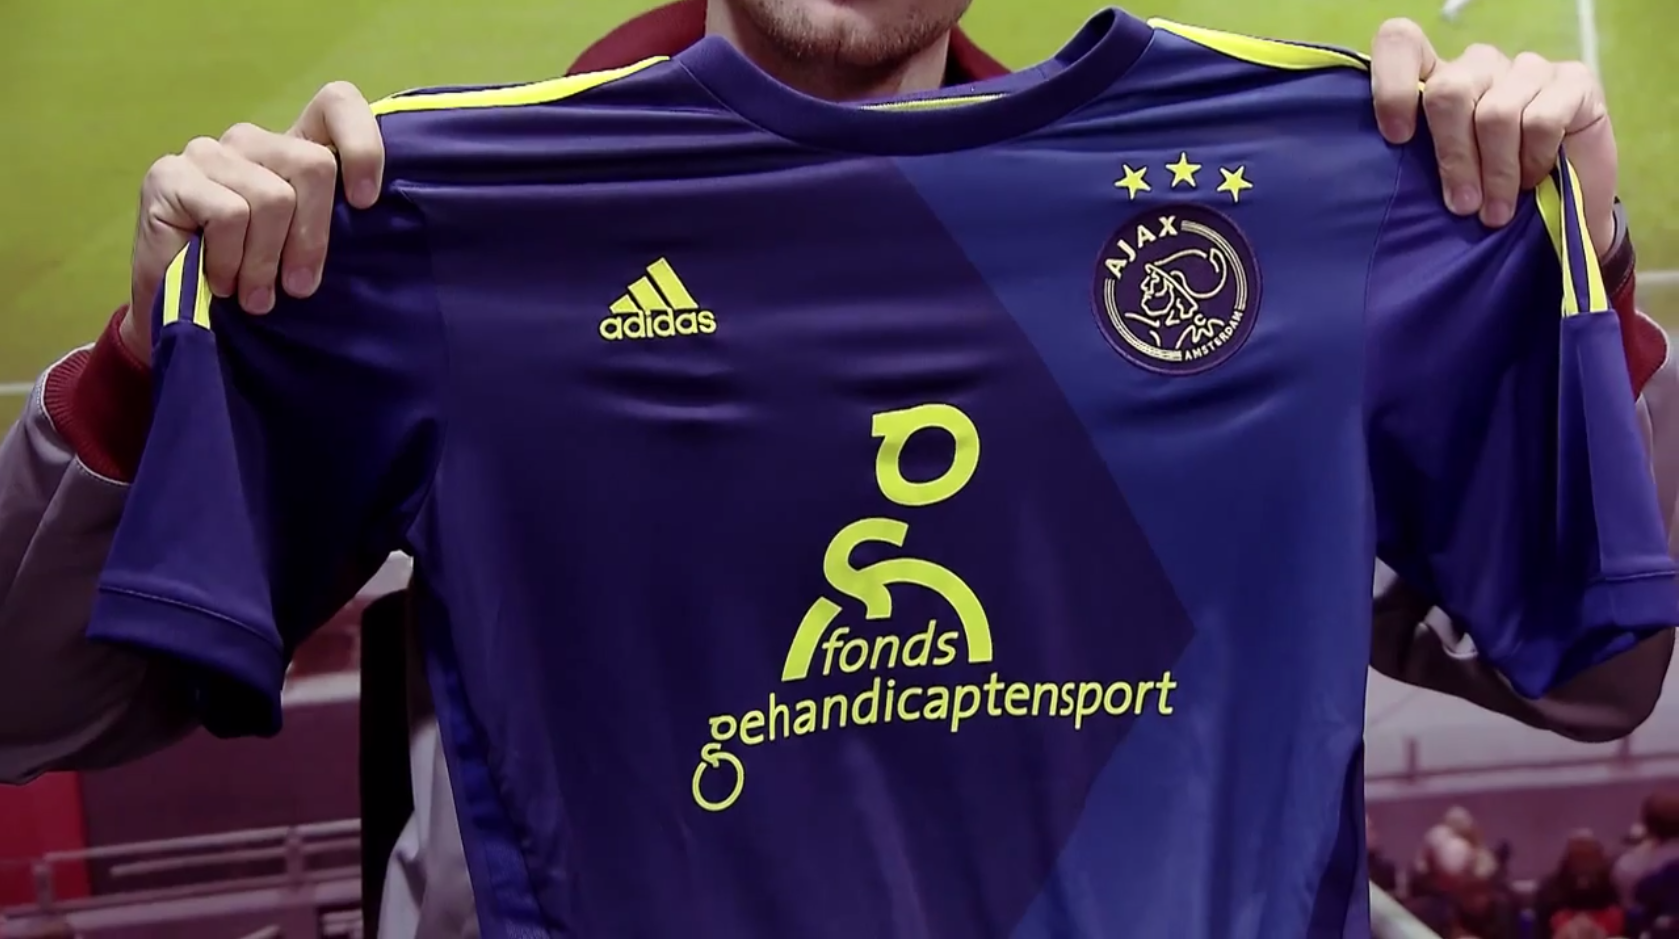 Ajax1.nl "Het uitshirt heeft veel weg van het shirt uit 2010/2011. Opnieuw blauw geel. Zouden jullie het shirt kopen? http://t.co/kKeAX8GEGX" / Twitter